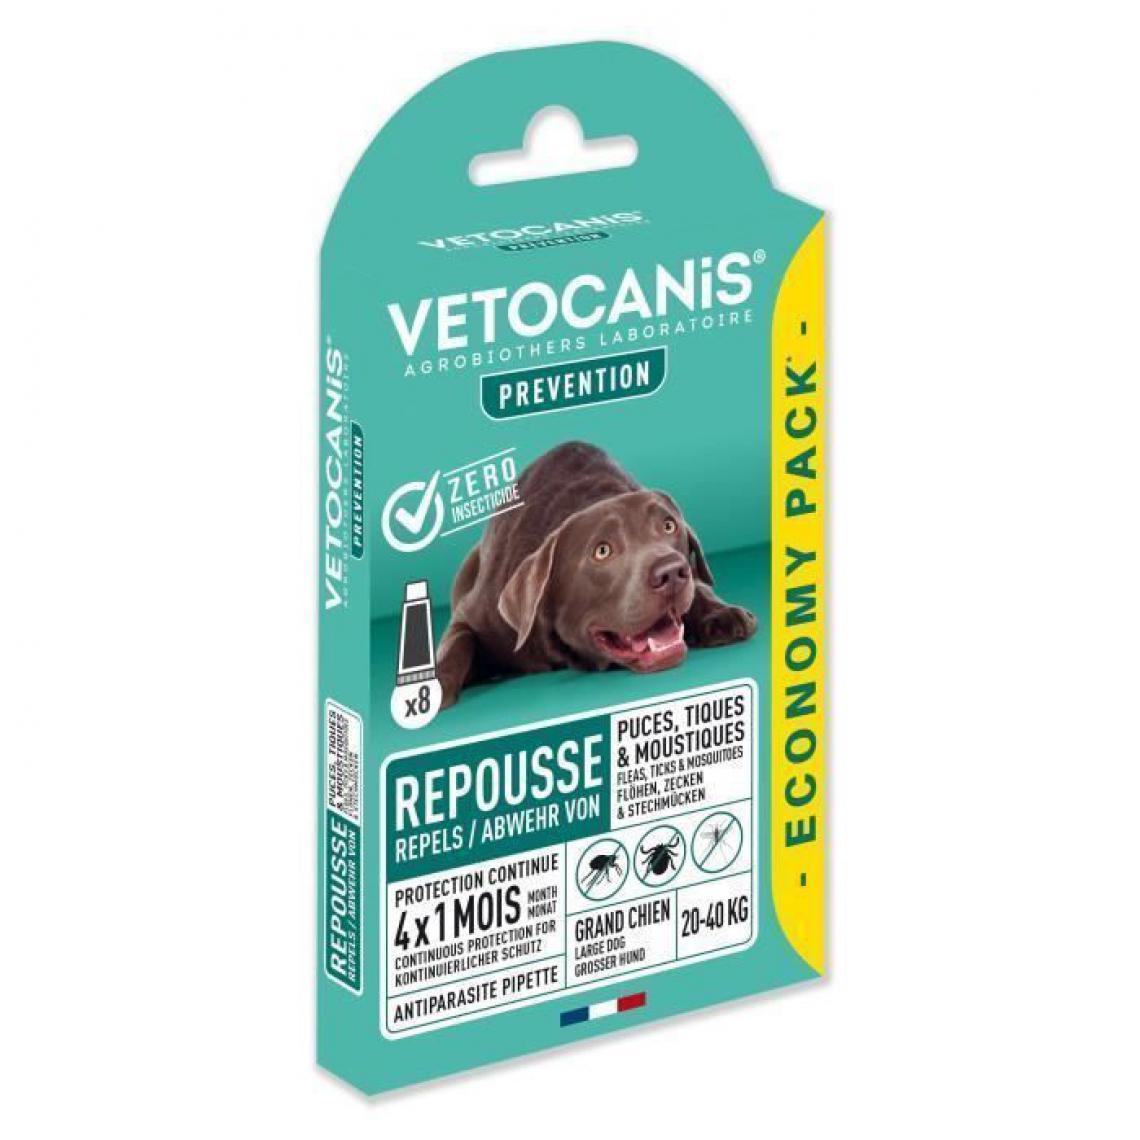 Vetocanis - VETOCANIS 8 Pipettes anti-puces et anti-tiques - Pour grand chien 20-40 kg - 4x 1 mois de protection - Anti-parasitaire pour chien